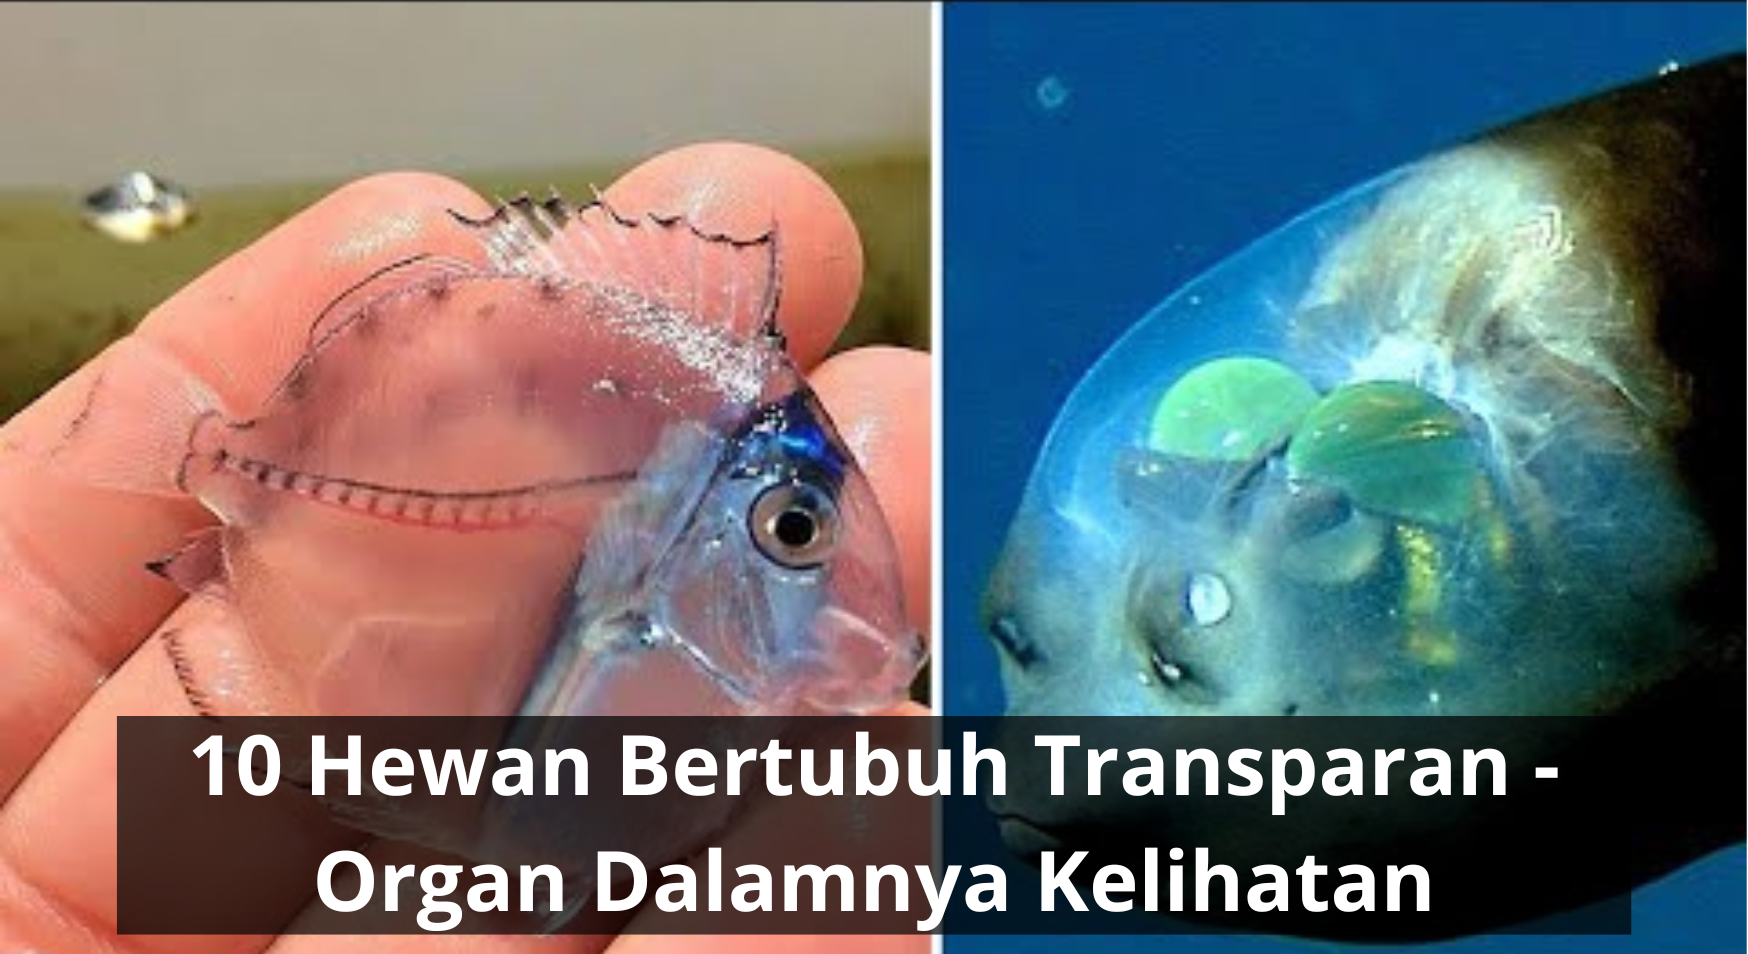 10 Hewan Bertubuh Transparan - Organ Dalamnya Kelihatan